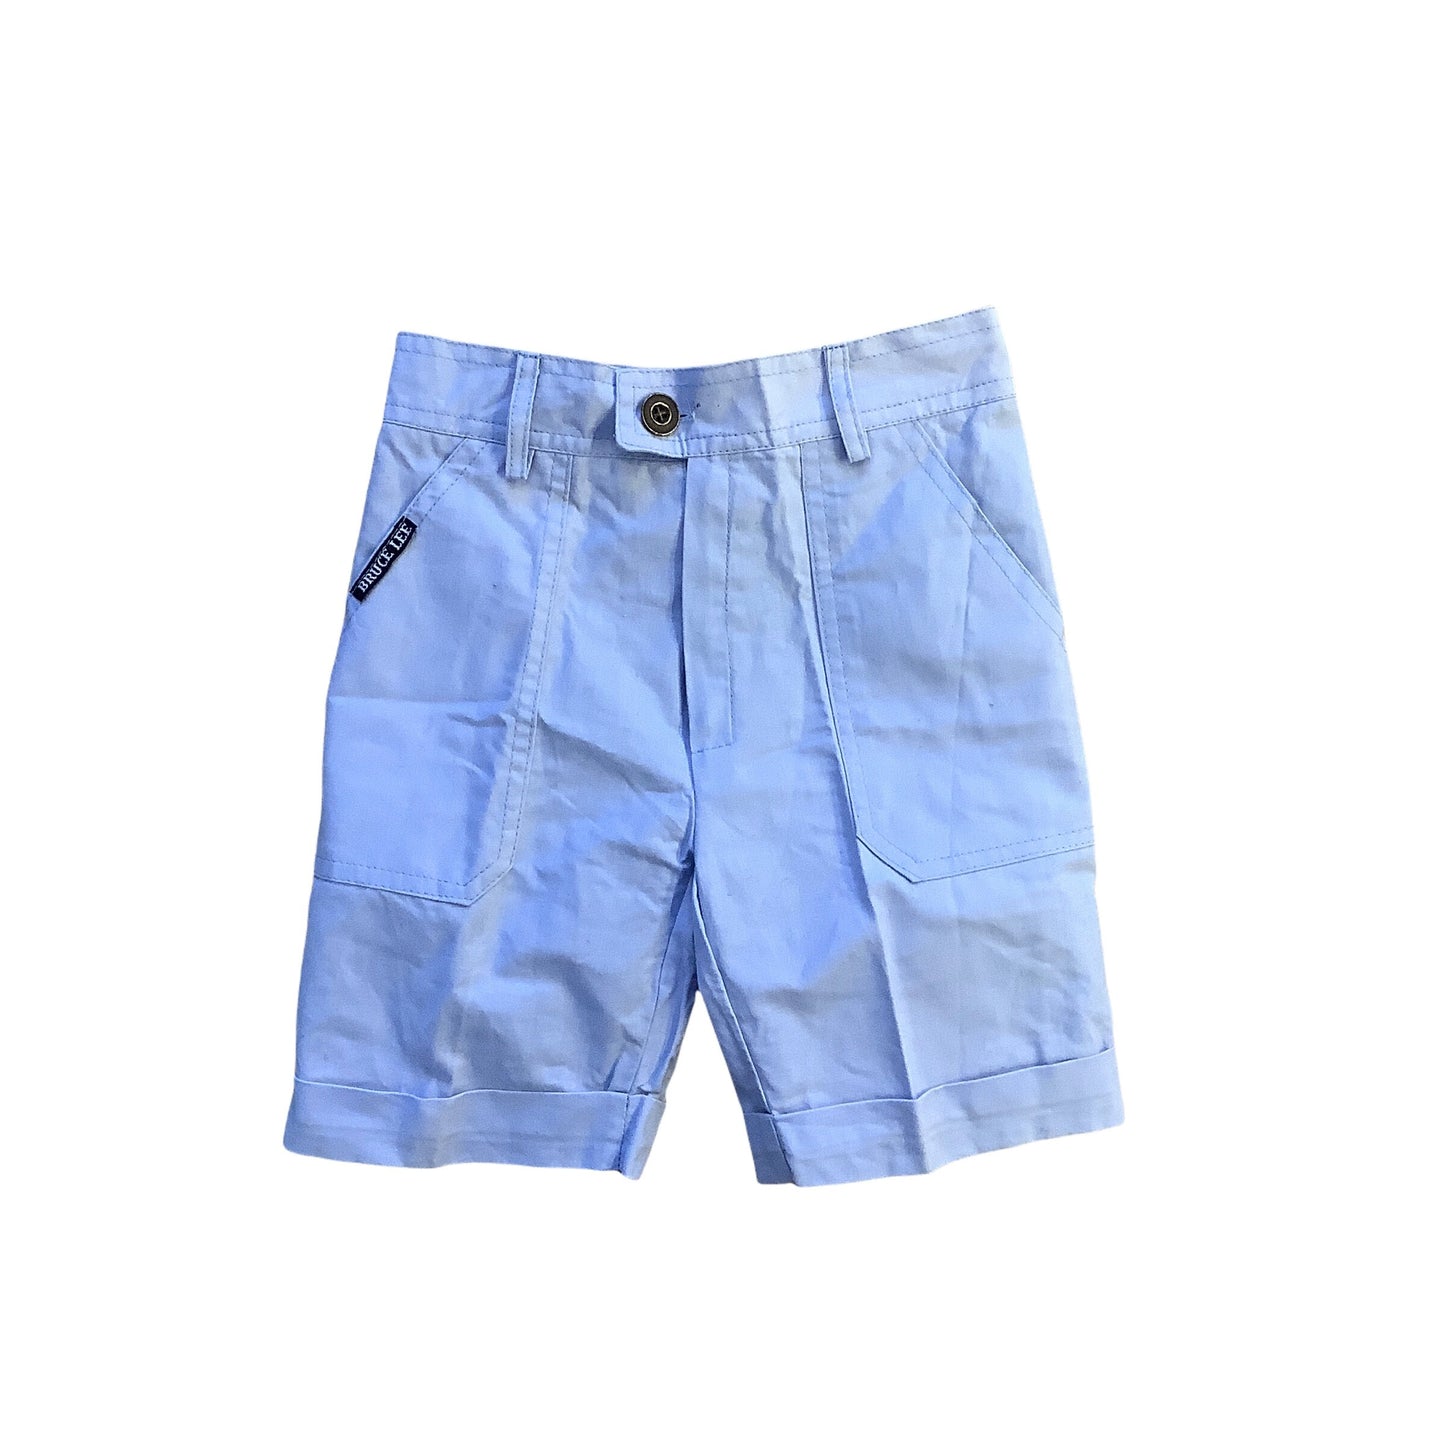 Vintage 1970's Light Blue Shorts 6-8Y